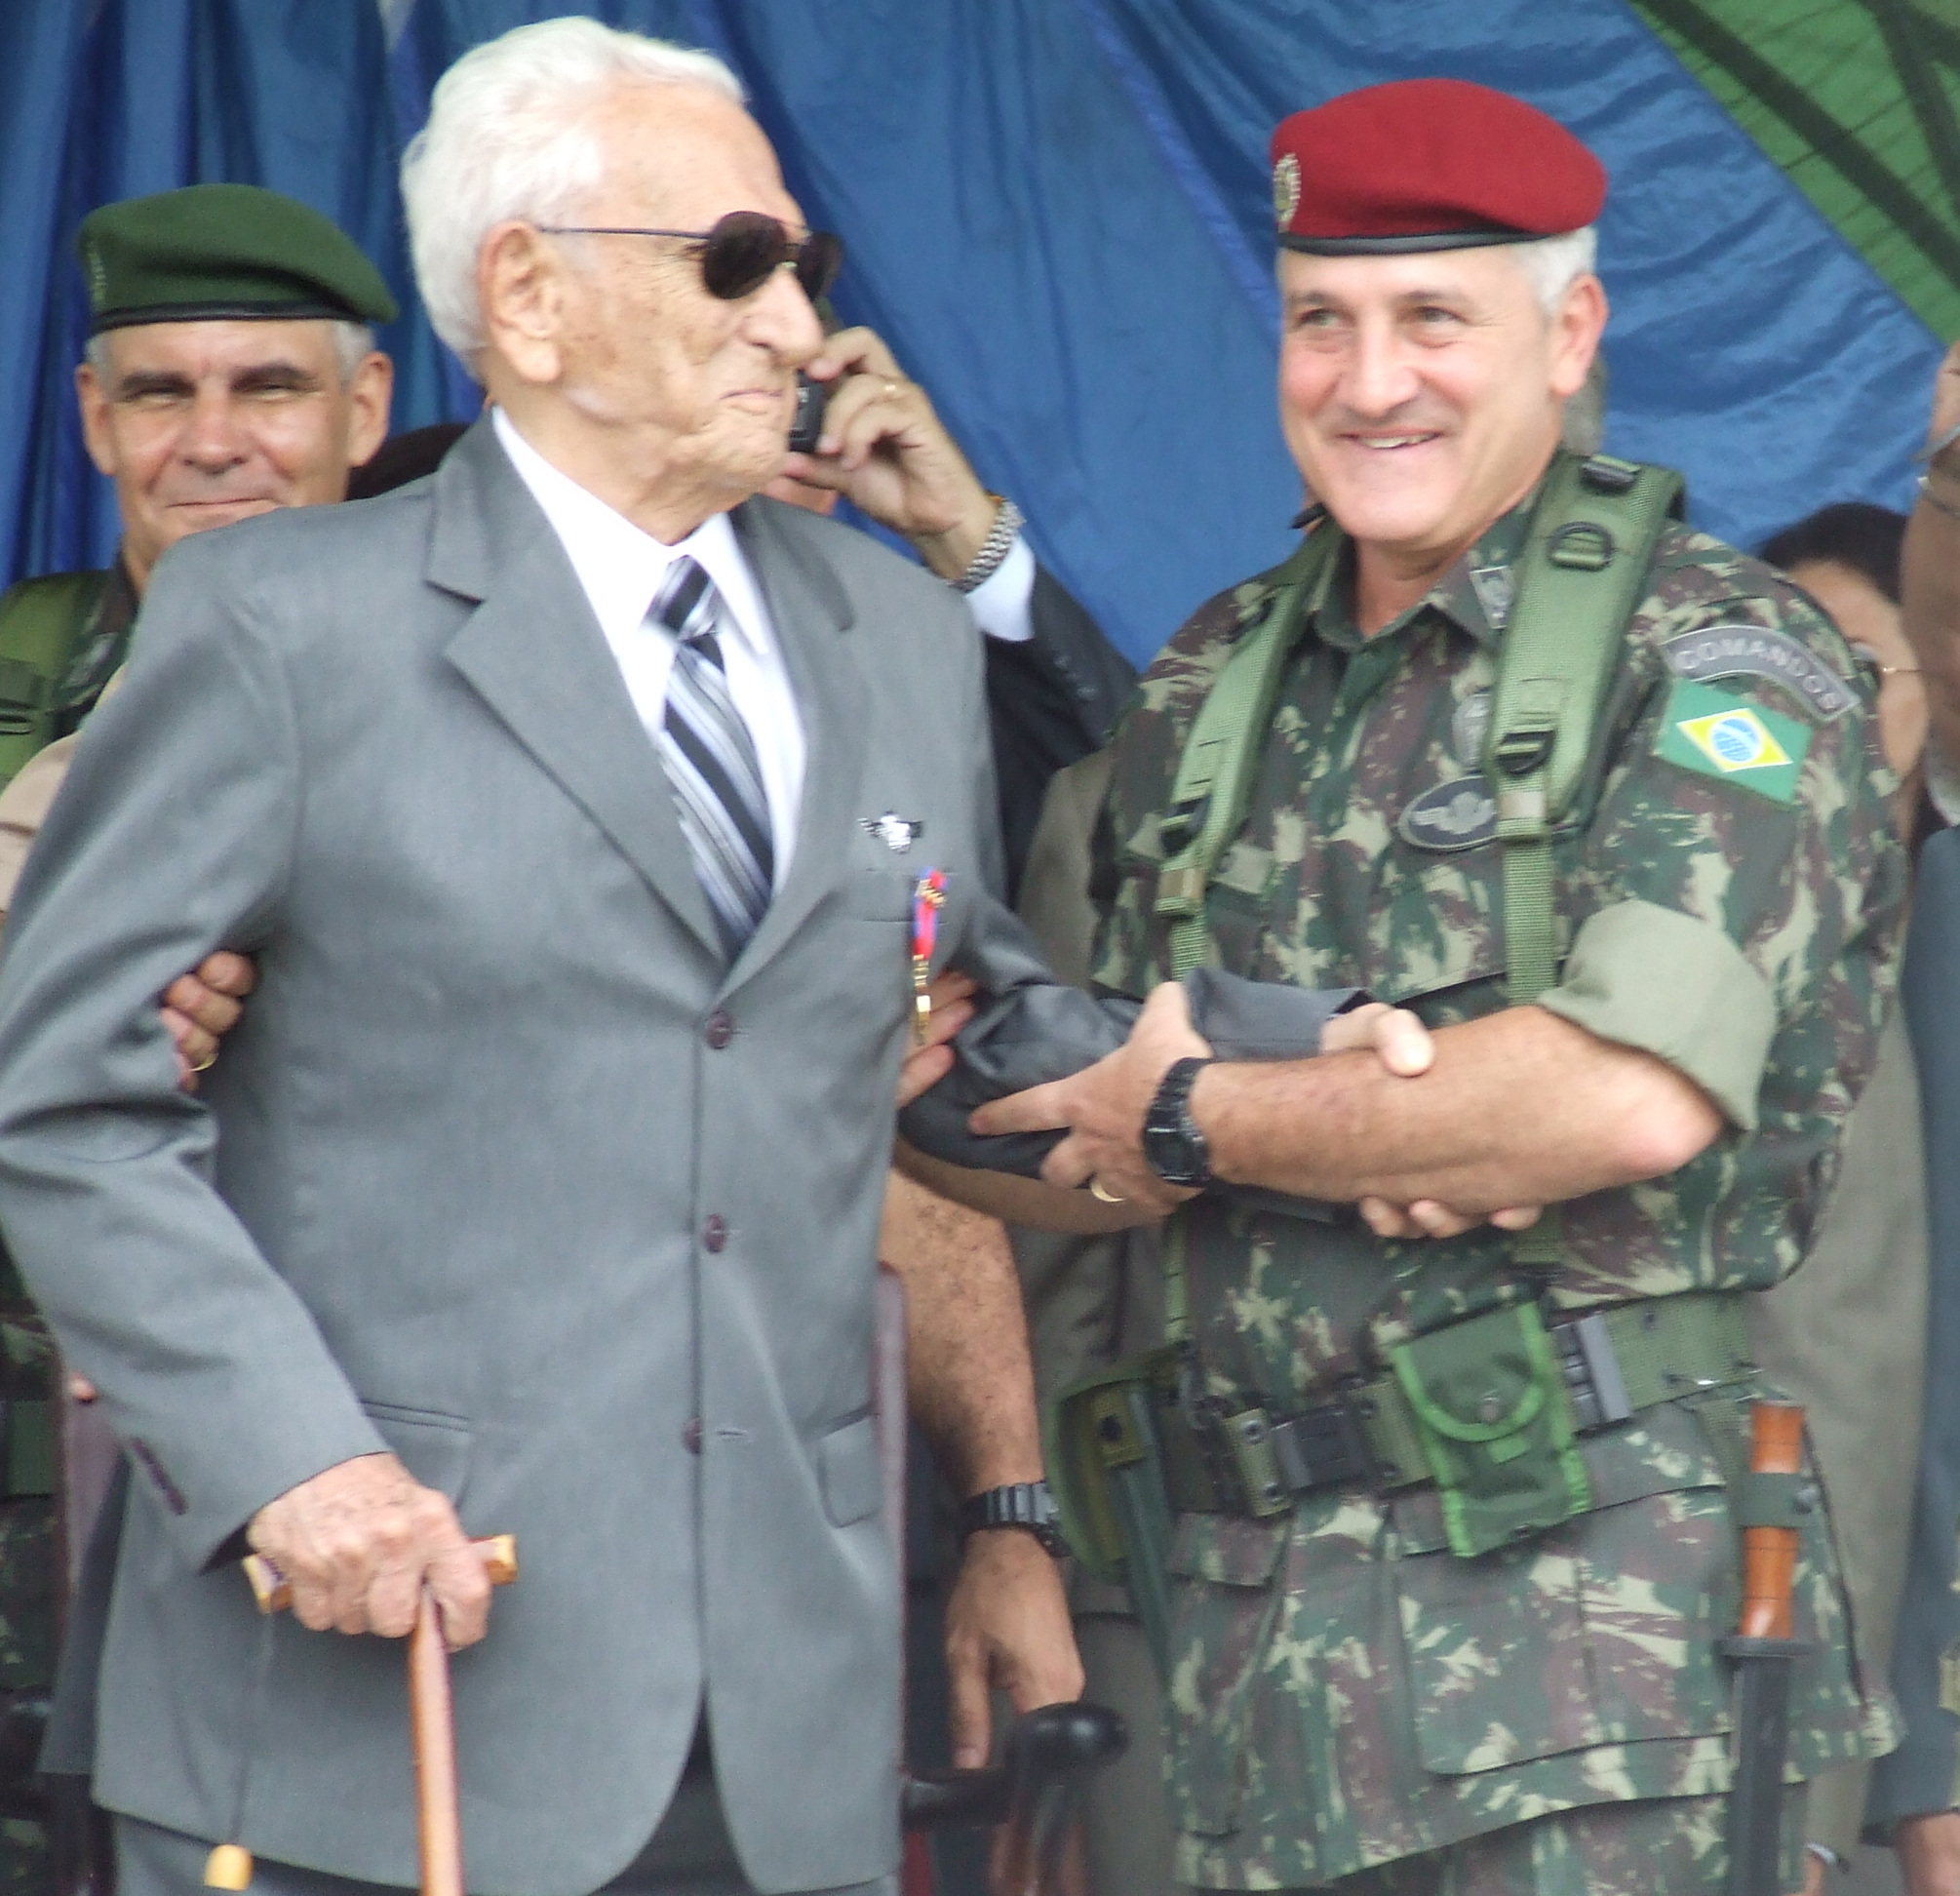 Rio de Janeiro, 2010: apesar dos seus 100 anos de idade, o General Pára-quedista ROBERTO DE PESSÔA (trajando à civil), ainda participa nos principais eventos da Brigada de Infantaria Pára-quedista. (Foto cedida pela Bda Inf Pqdt)